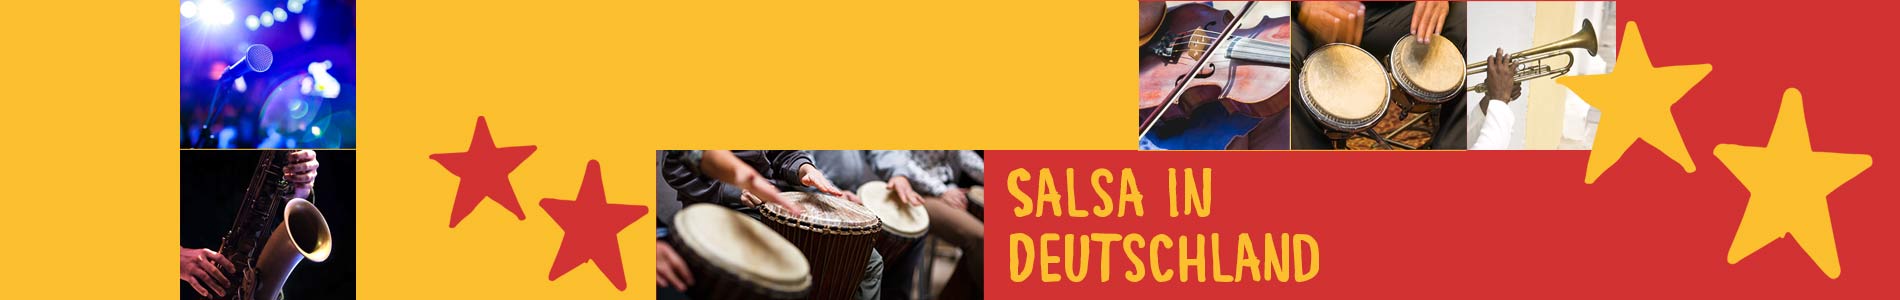 Salsa in Dettingen unter Teck – Salsa lernen und tanzen, Tanzkurse, Partys, Veranstaltungen